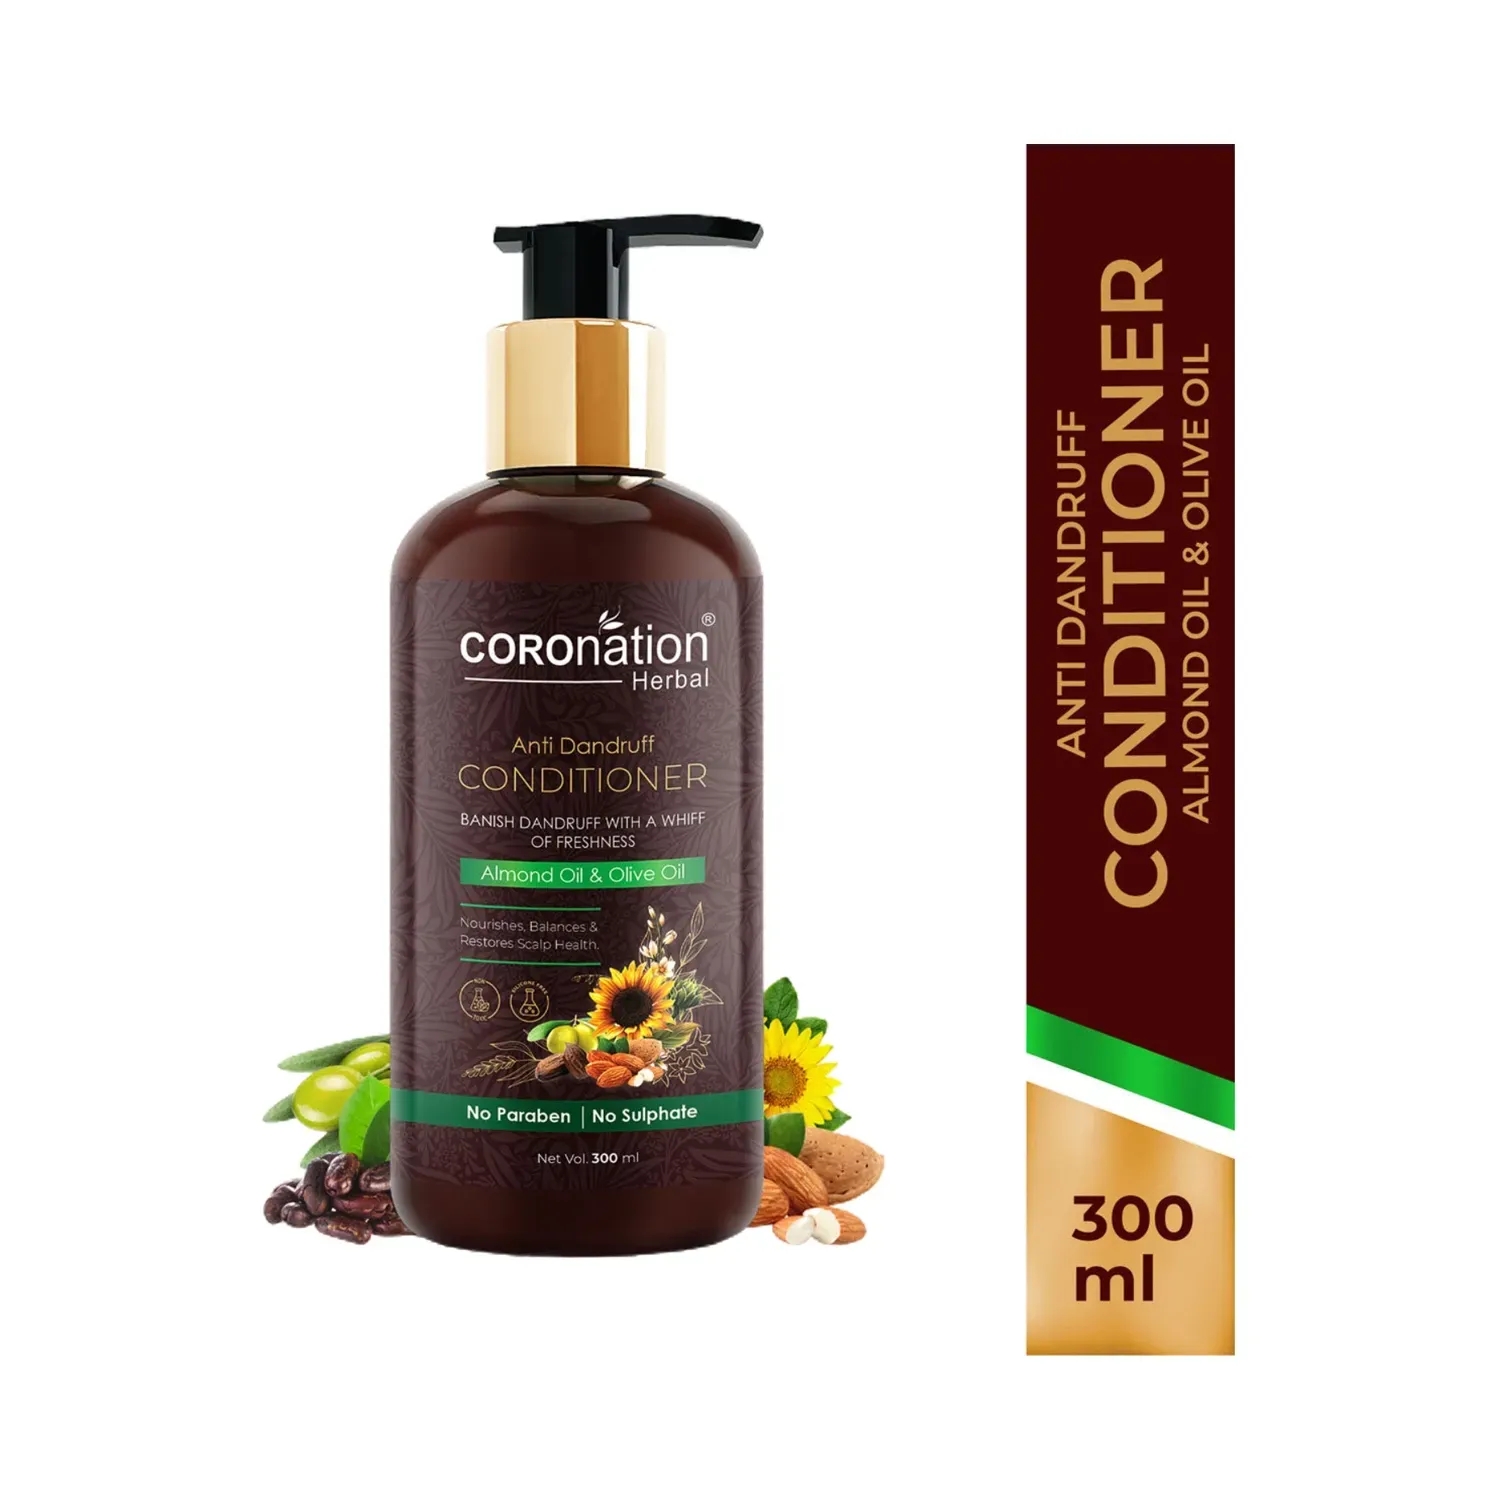 COROnation Herbal | COROnation Herbal Anti Dandruff Conditioner (300ml)